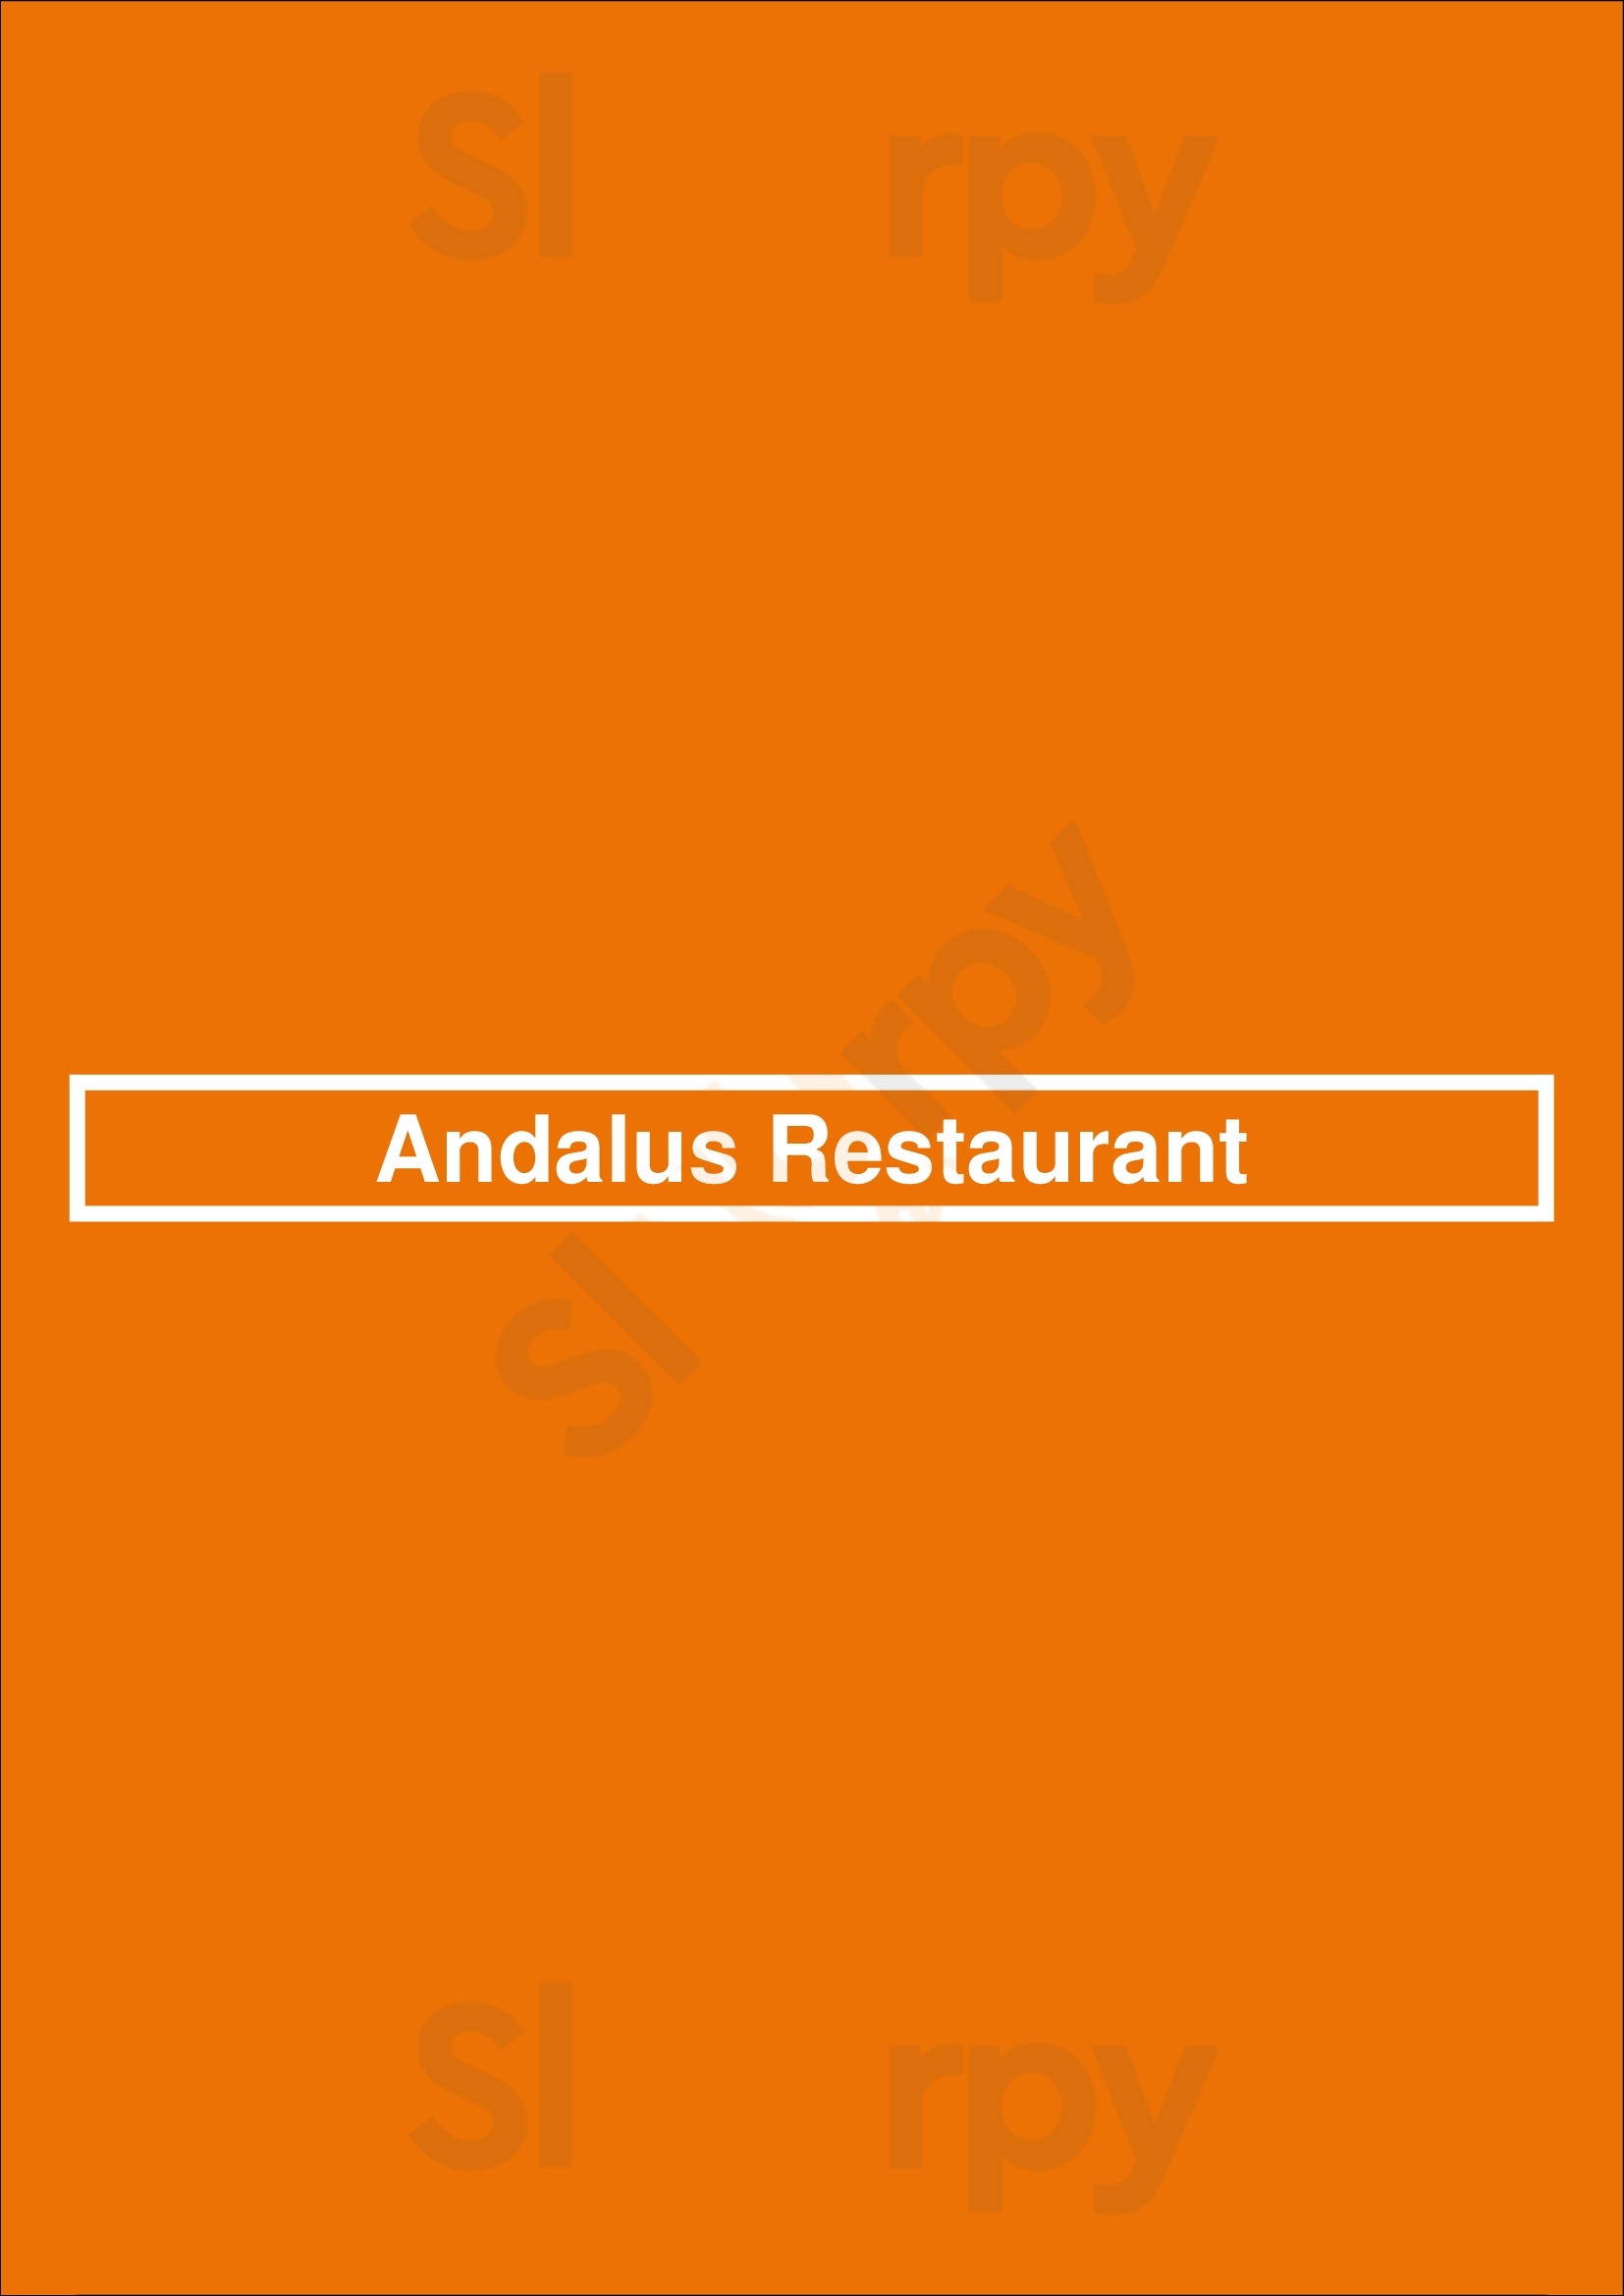 Andalus Restaurant Leeds Menu - 1